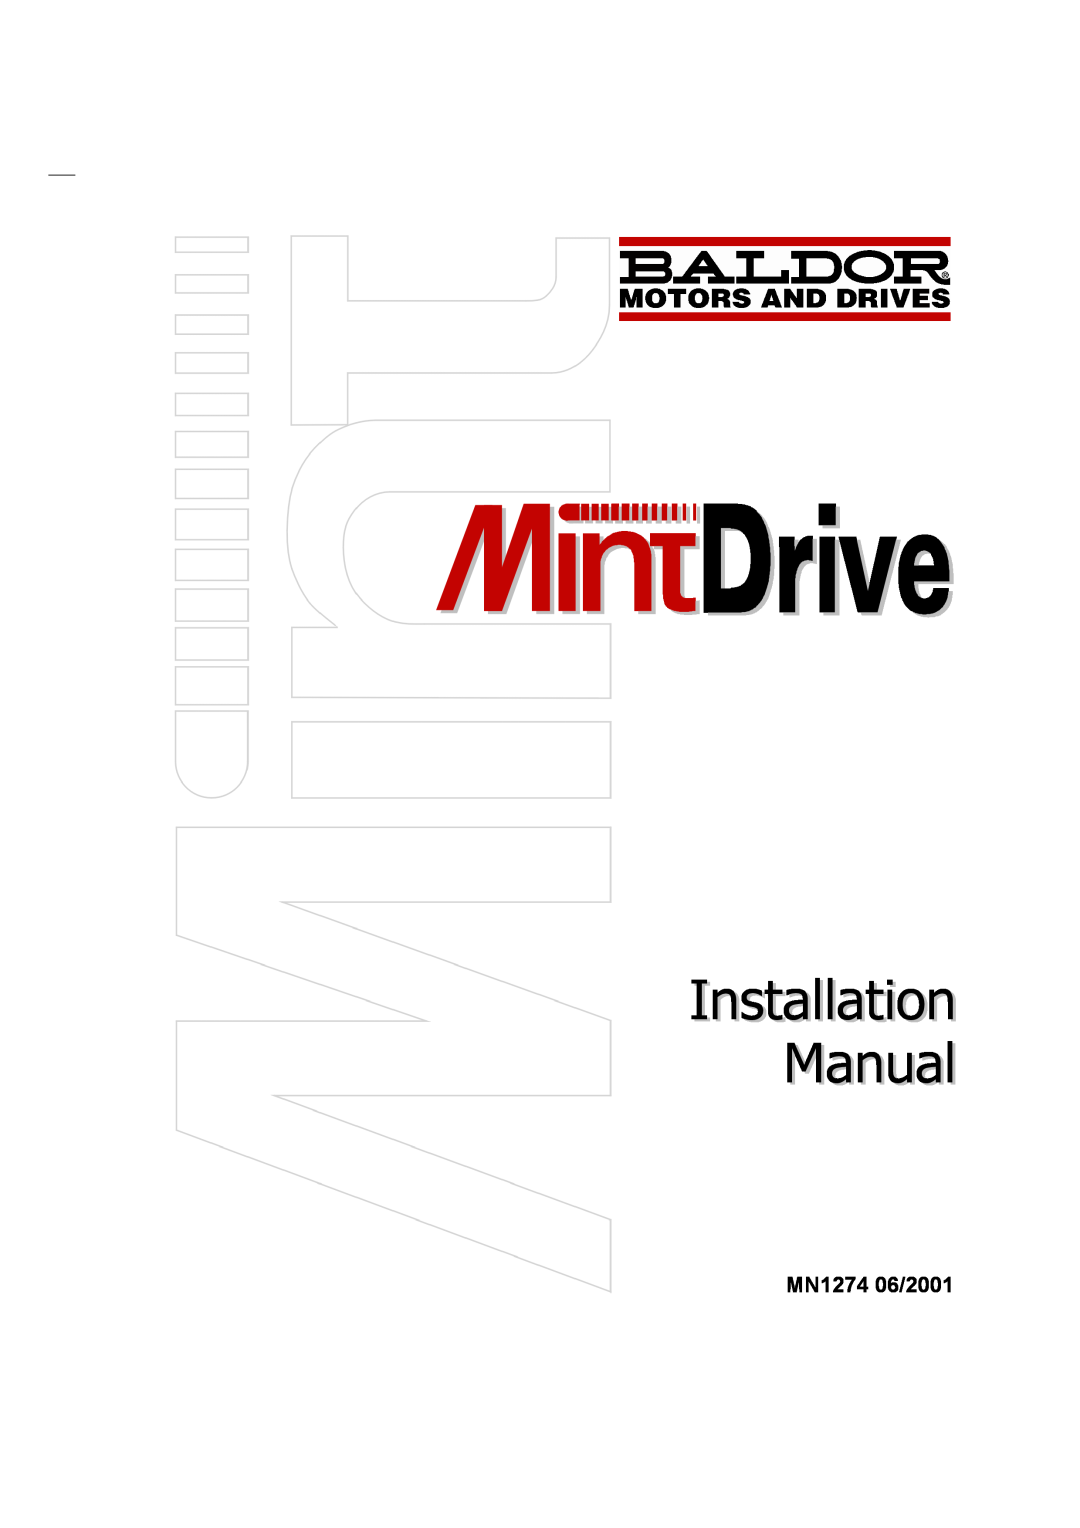 Baldor MN1274 06/2001 installation manual Installation Manual 